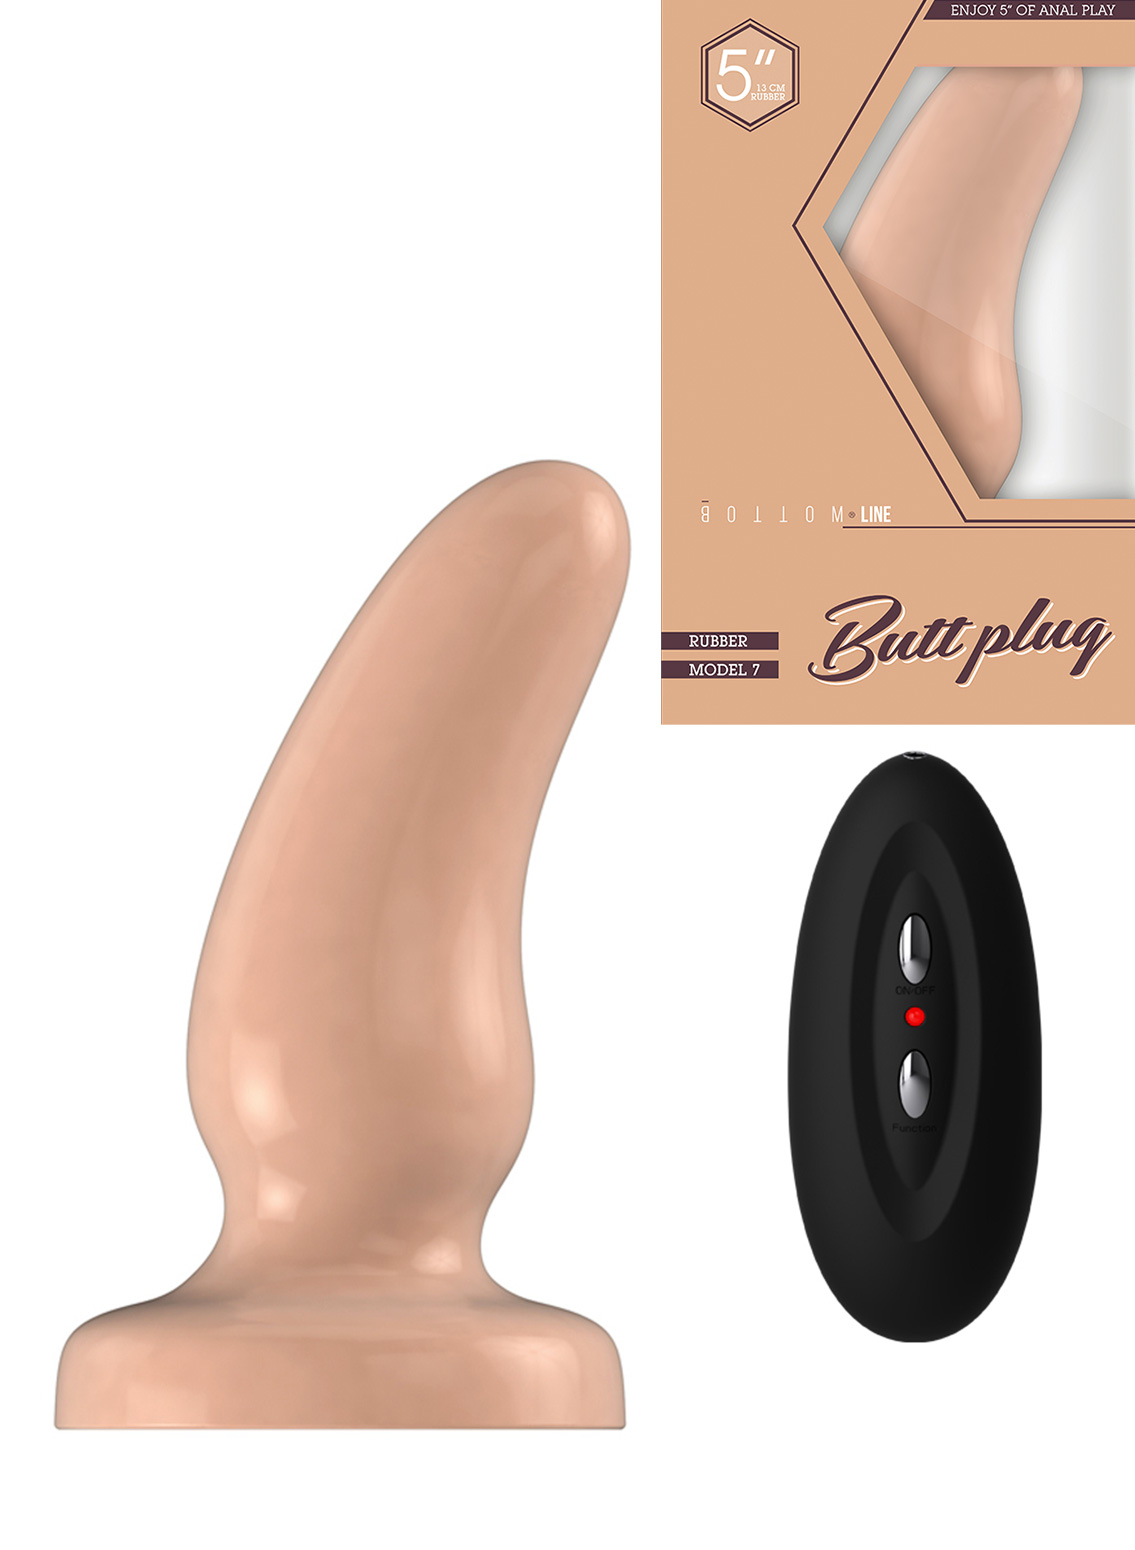 Bottom Line 5" Vibrating Rubber Buttplug Model 7 Flesh